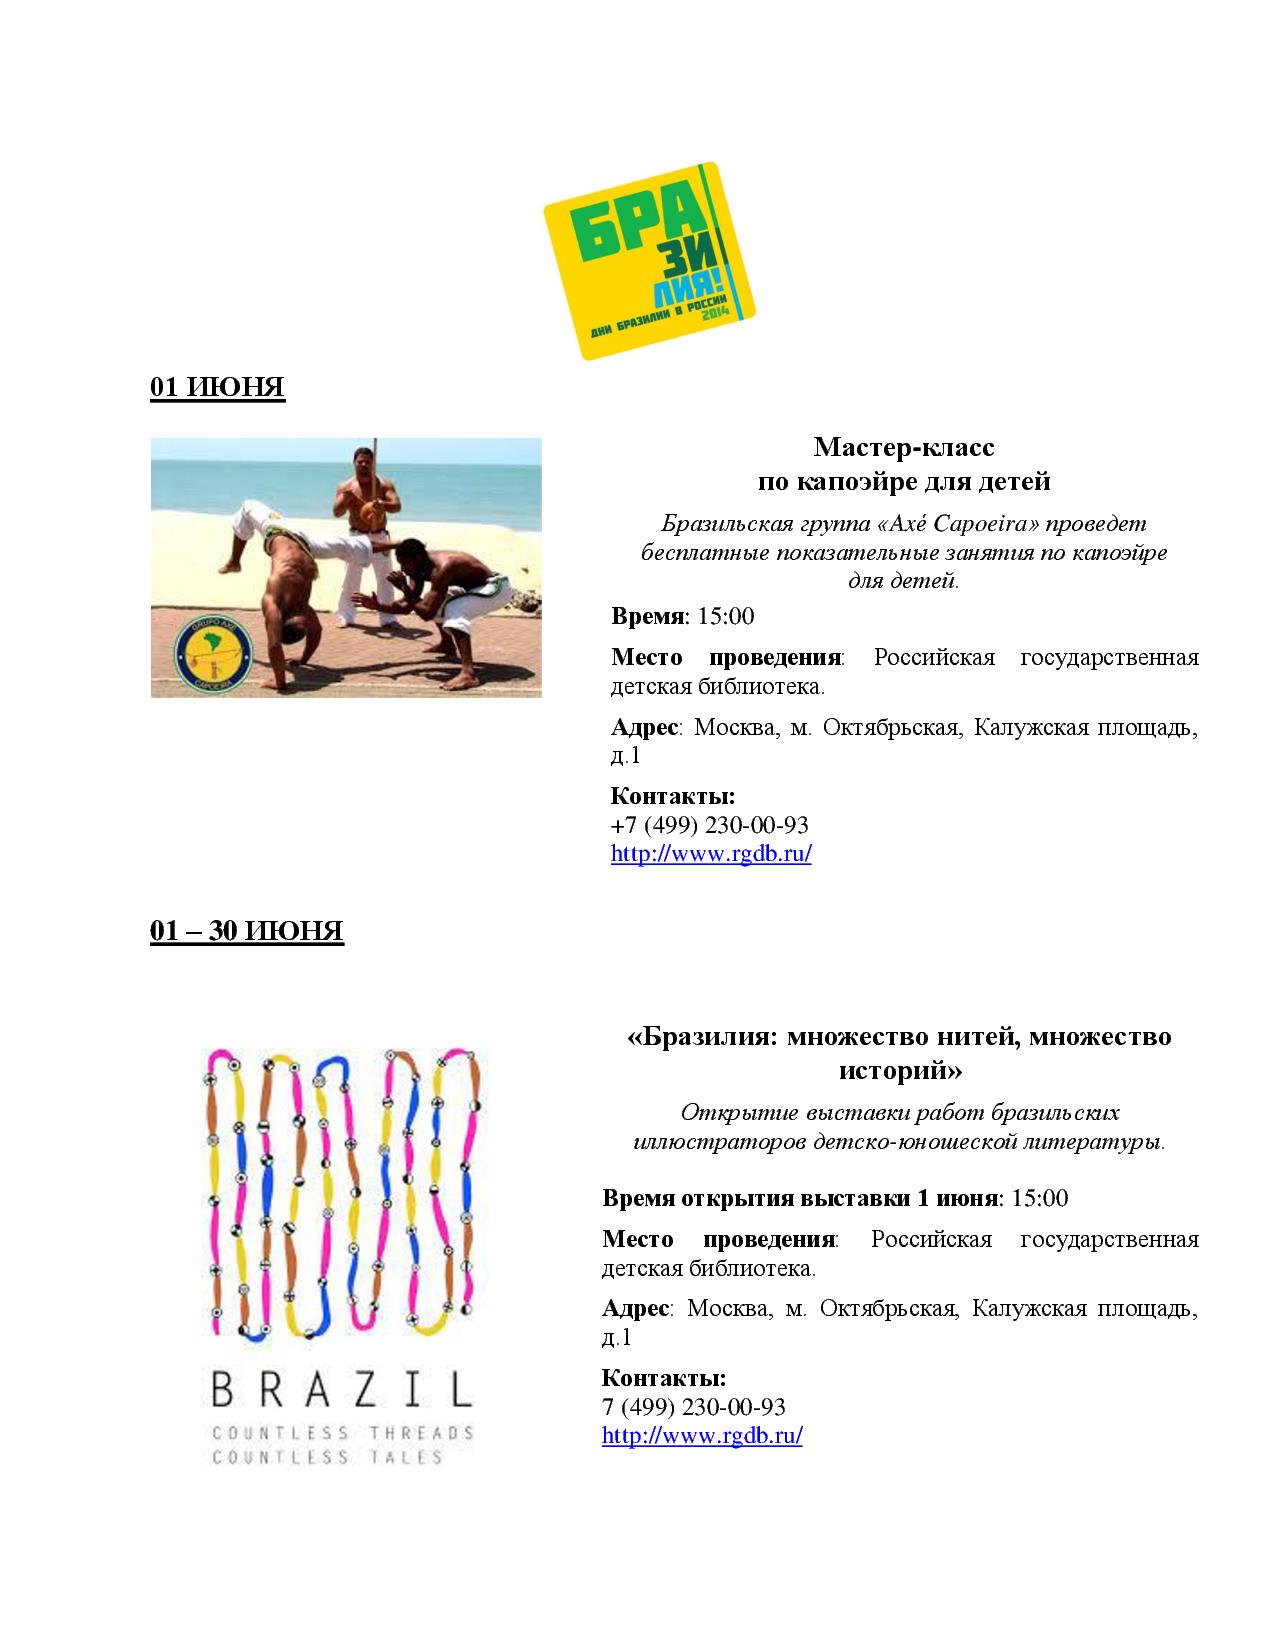  Открытие фестиваля «Дни Бразилии в России 2014»  - фото 7